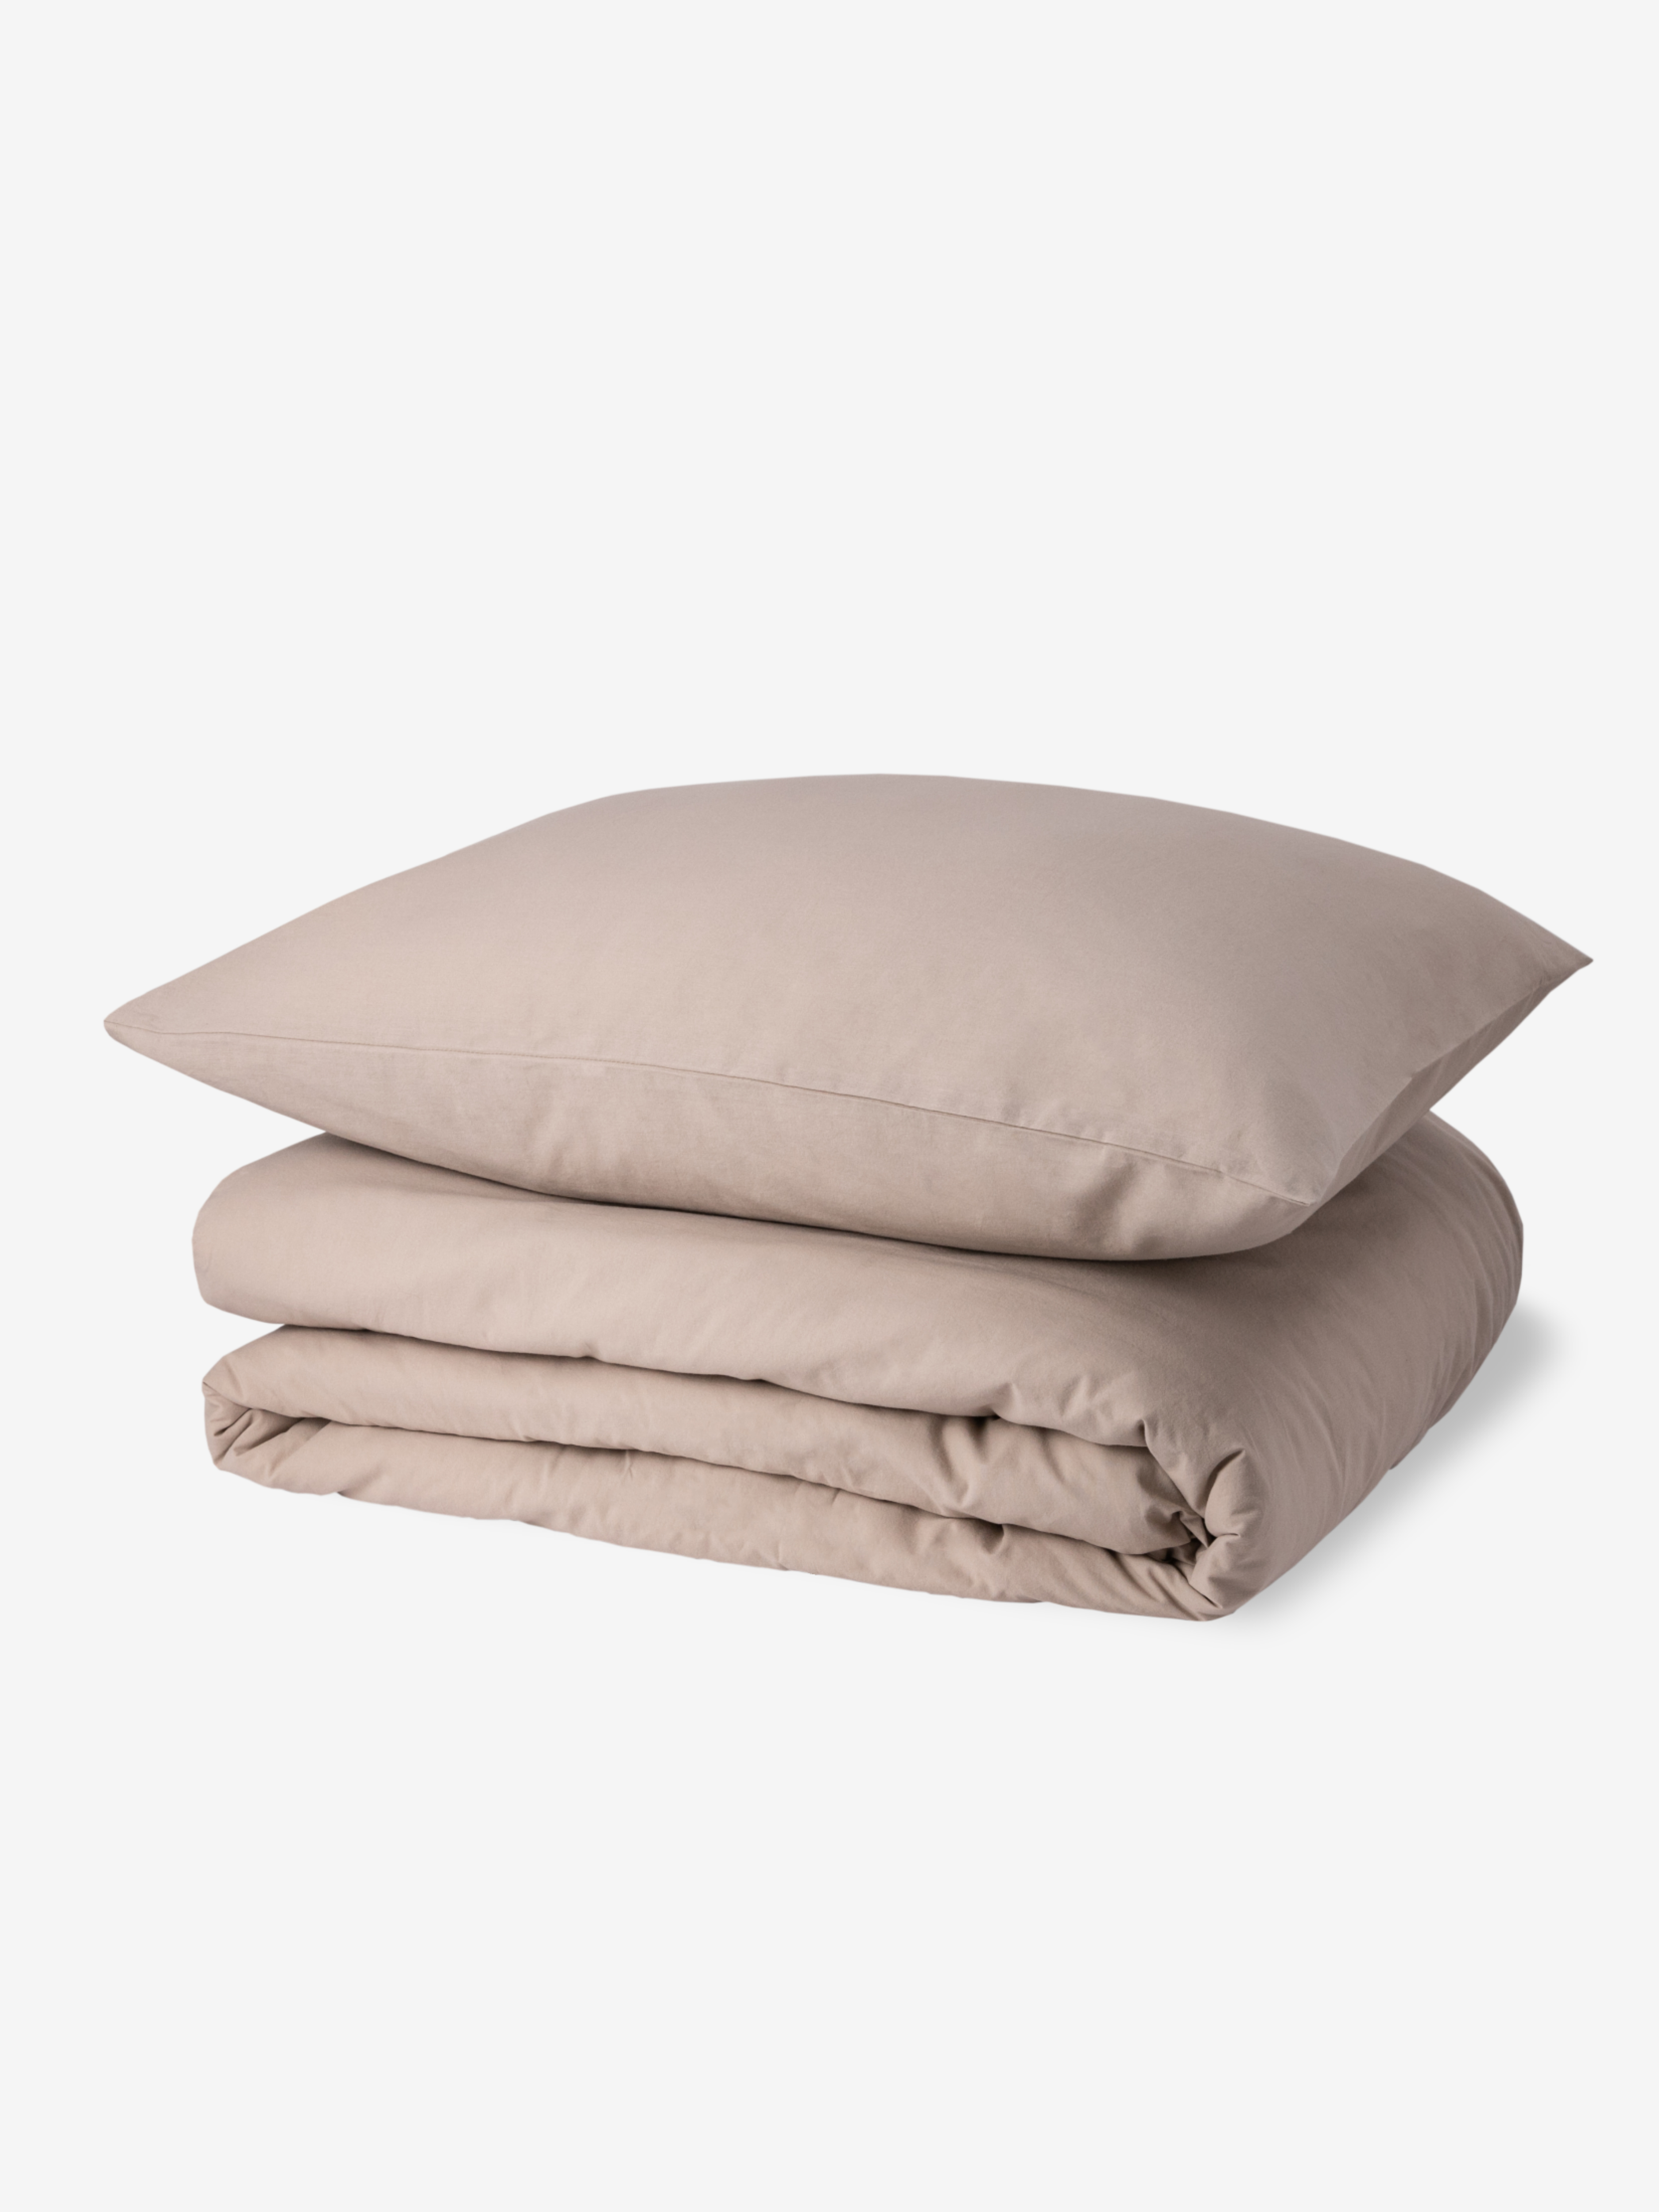 фото Комплект постельного белья comfort hygge organic размер евро цвет светло-бежевый